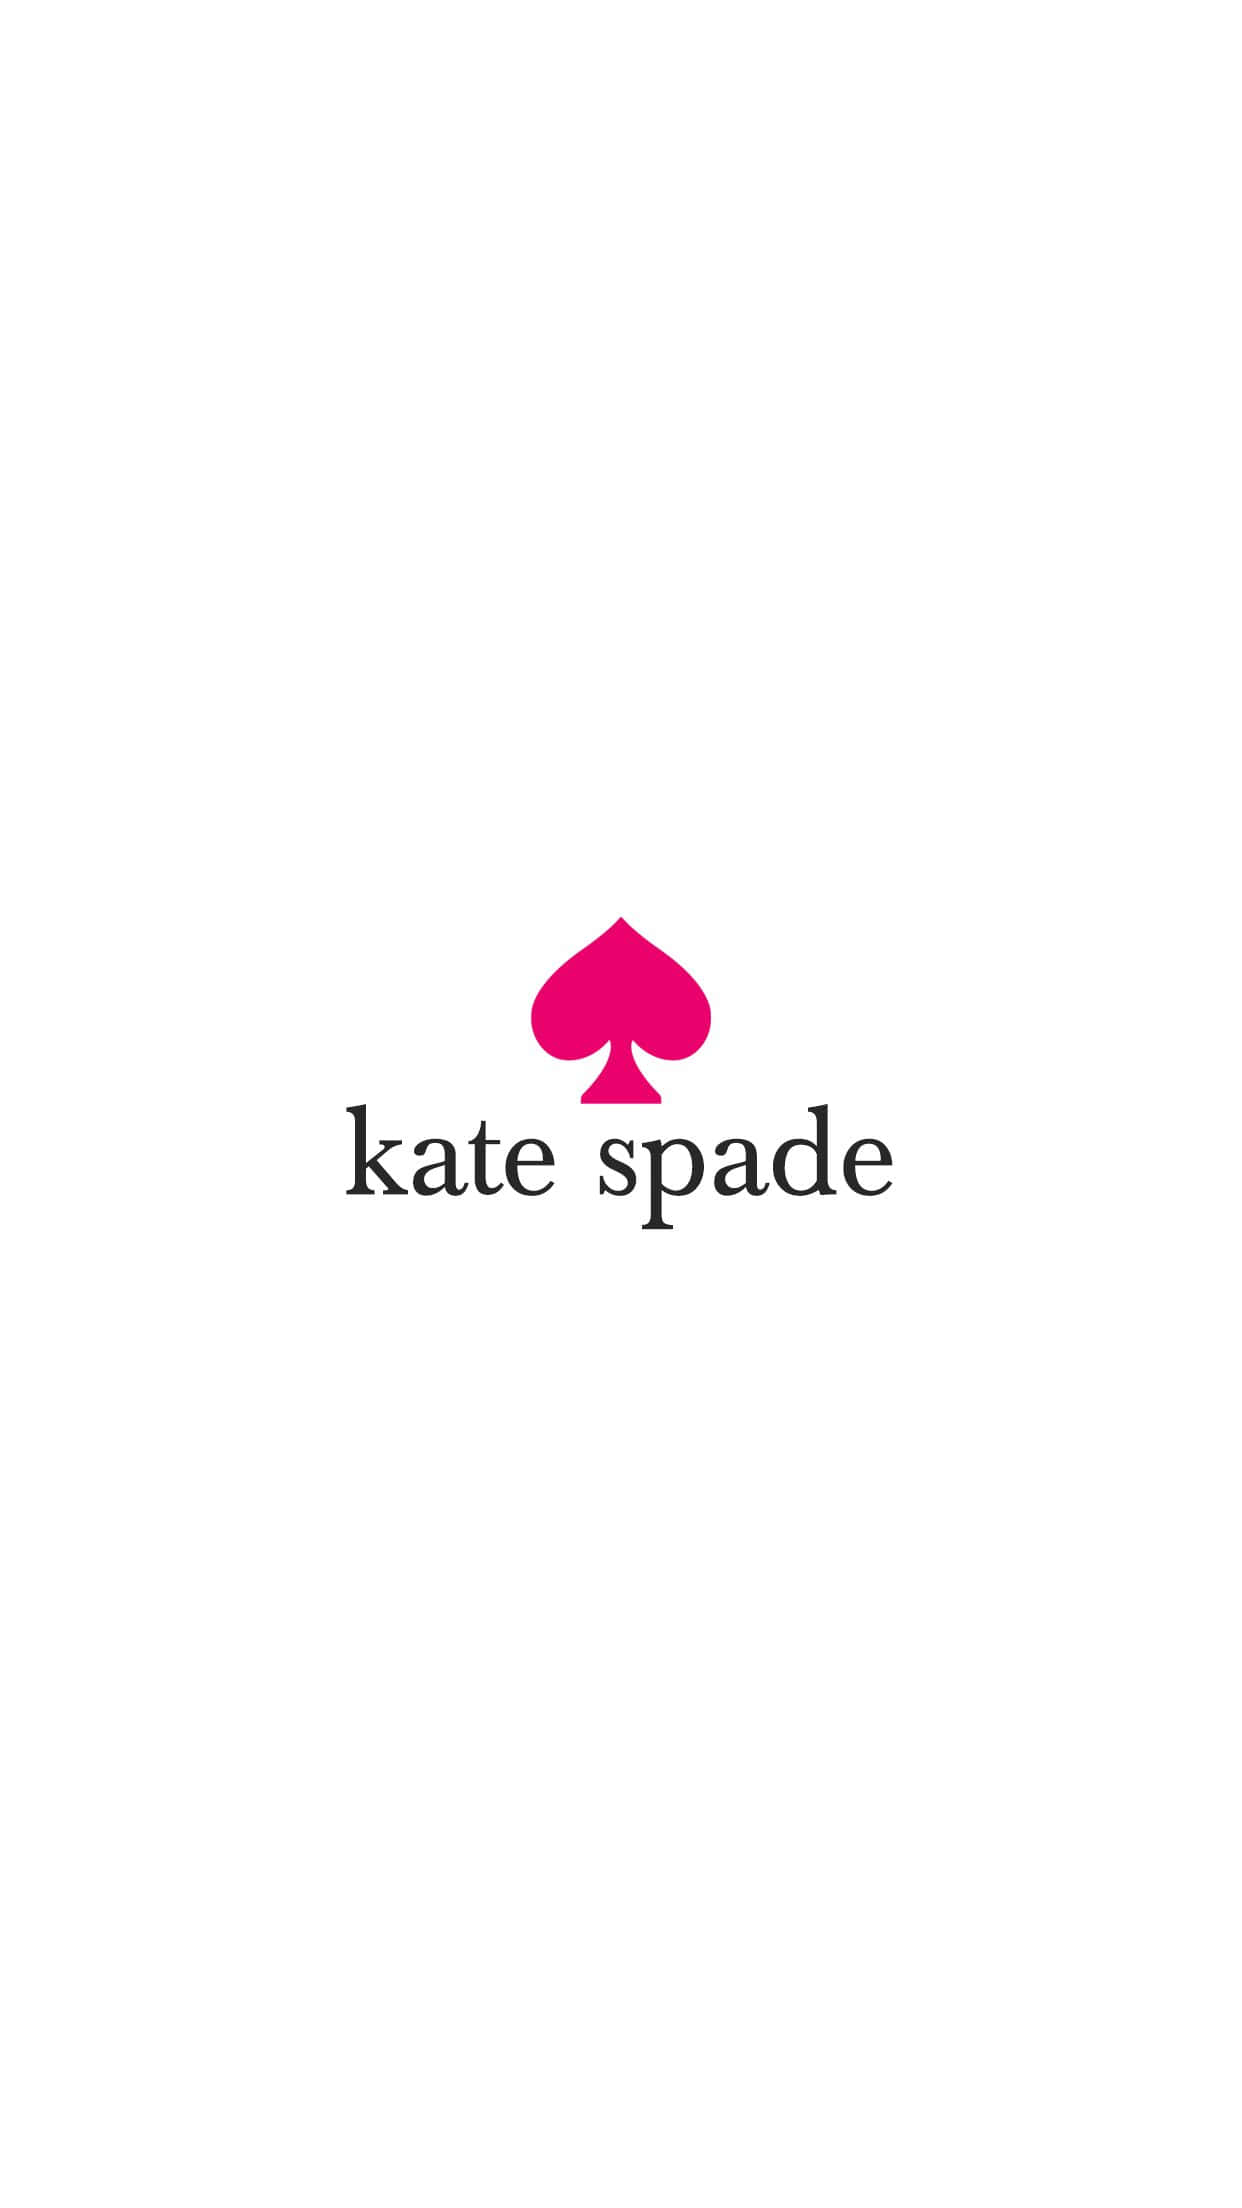 Preparatiper Il Weekend Con Questa Allegra Carta Da Parati Di Kate Spade.